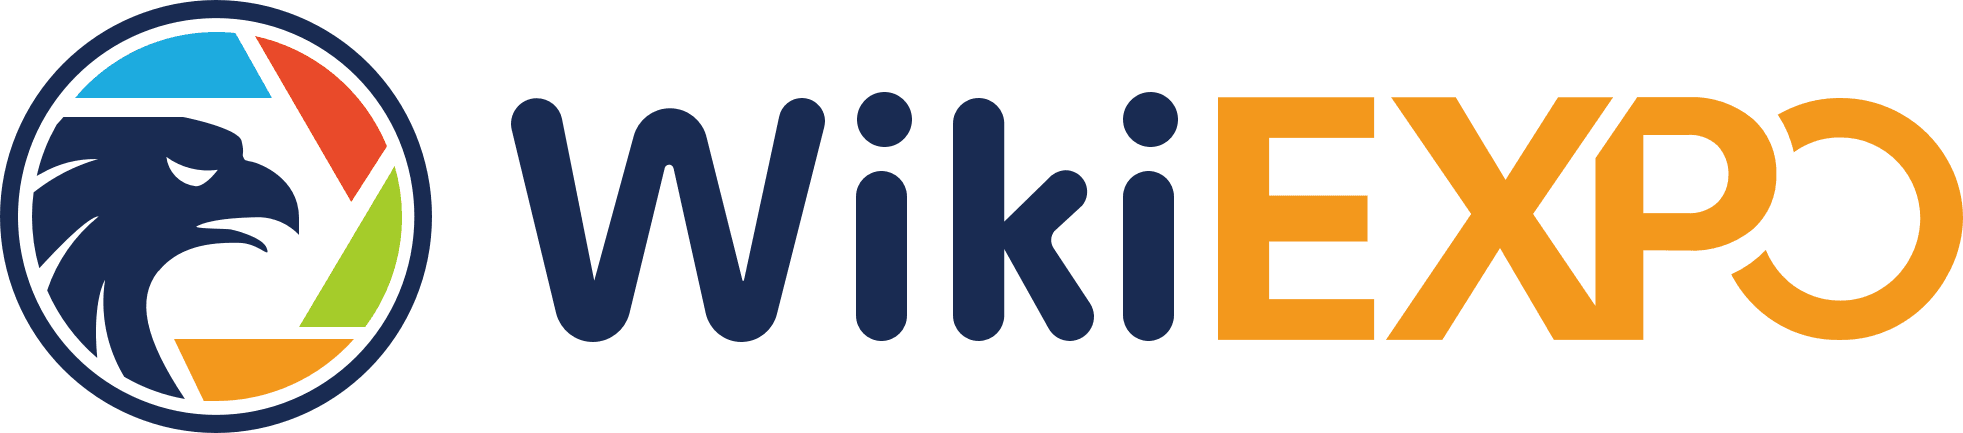 WikiExpo